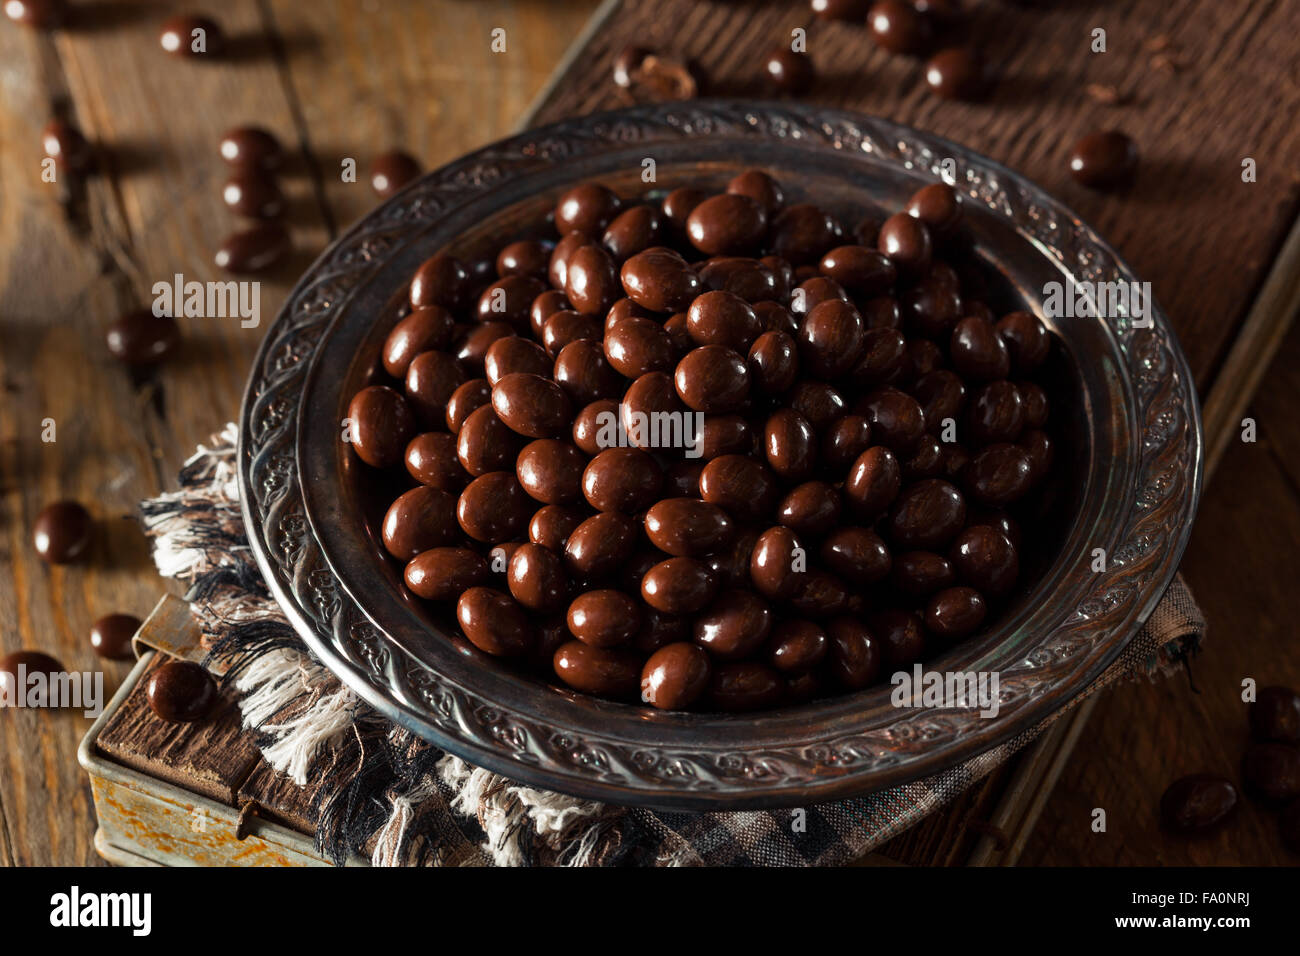 Los granos de café espresso cubiertas de chocolate listo para comer Foto de stock